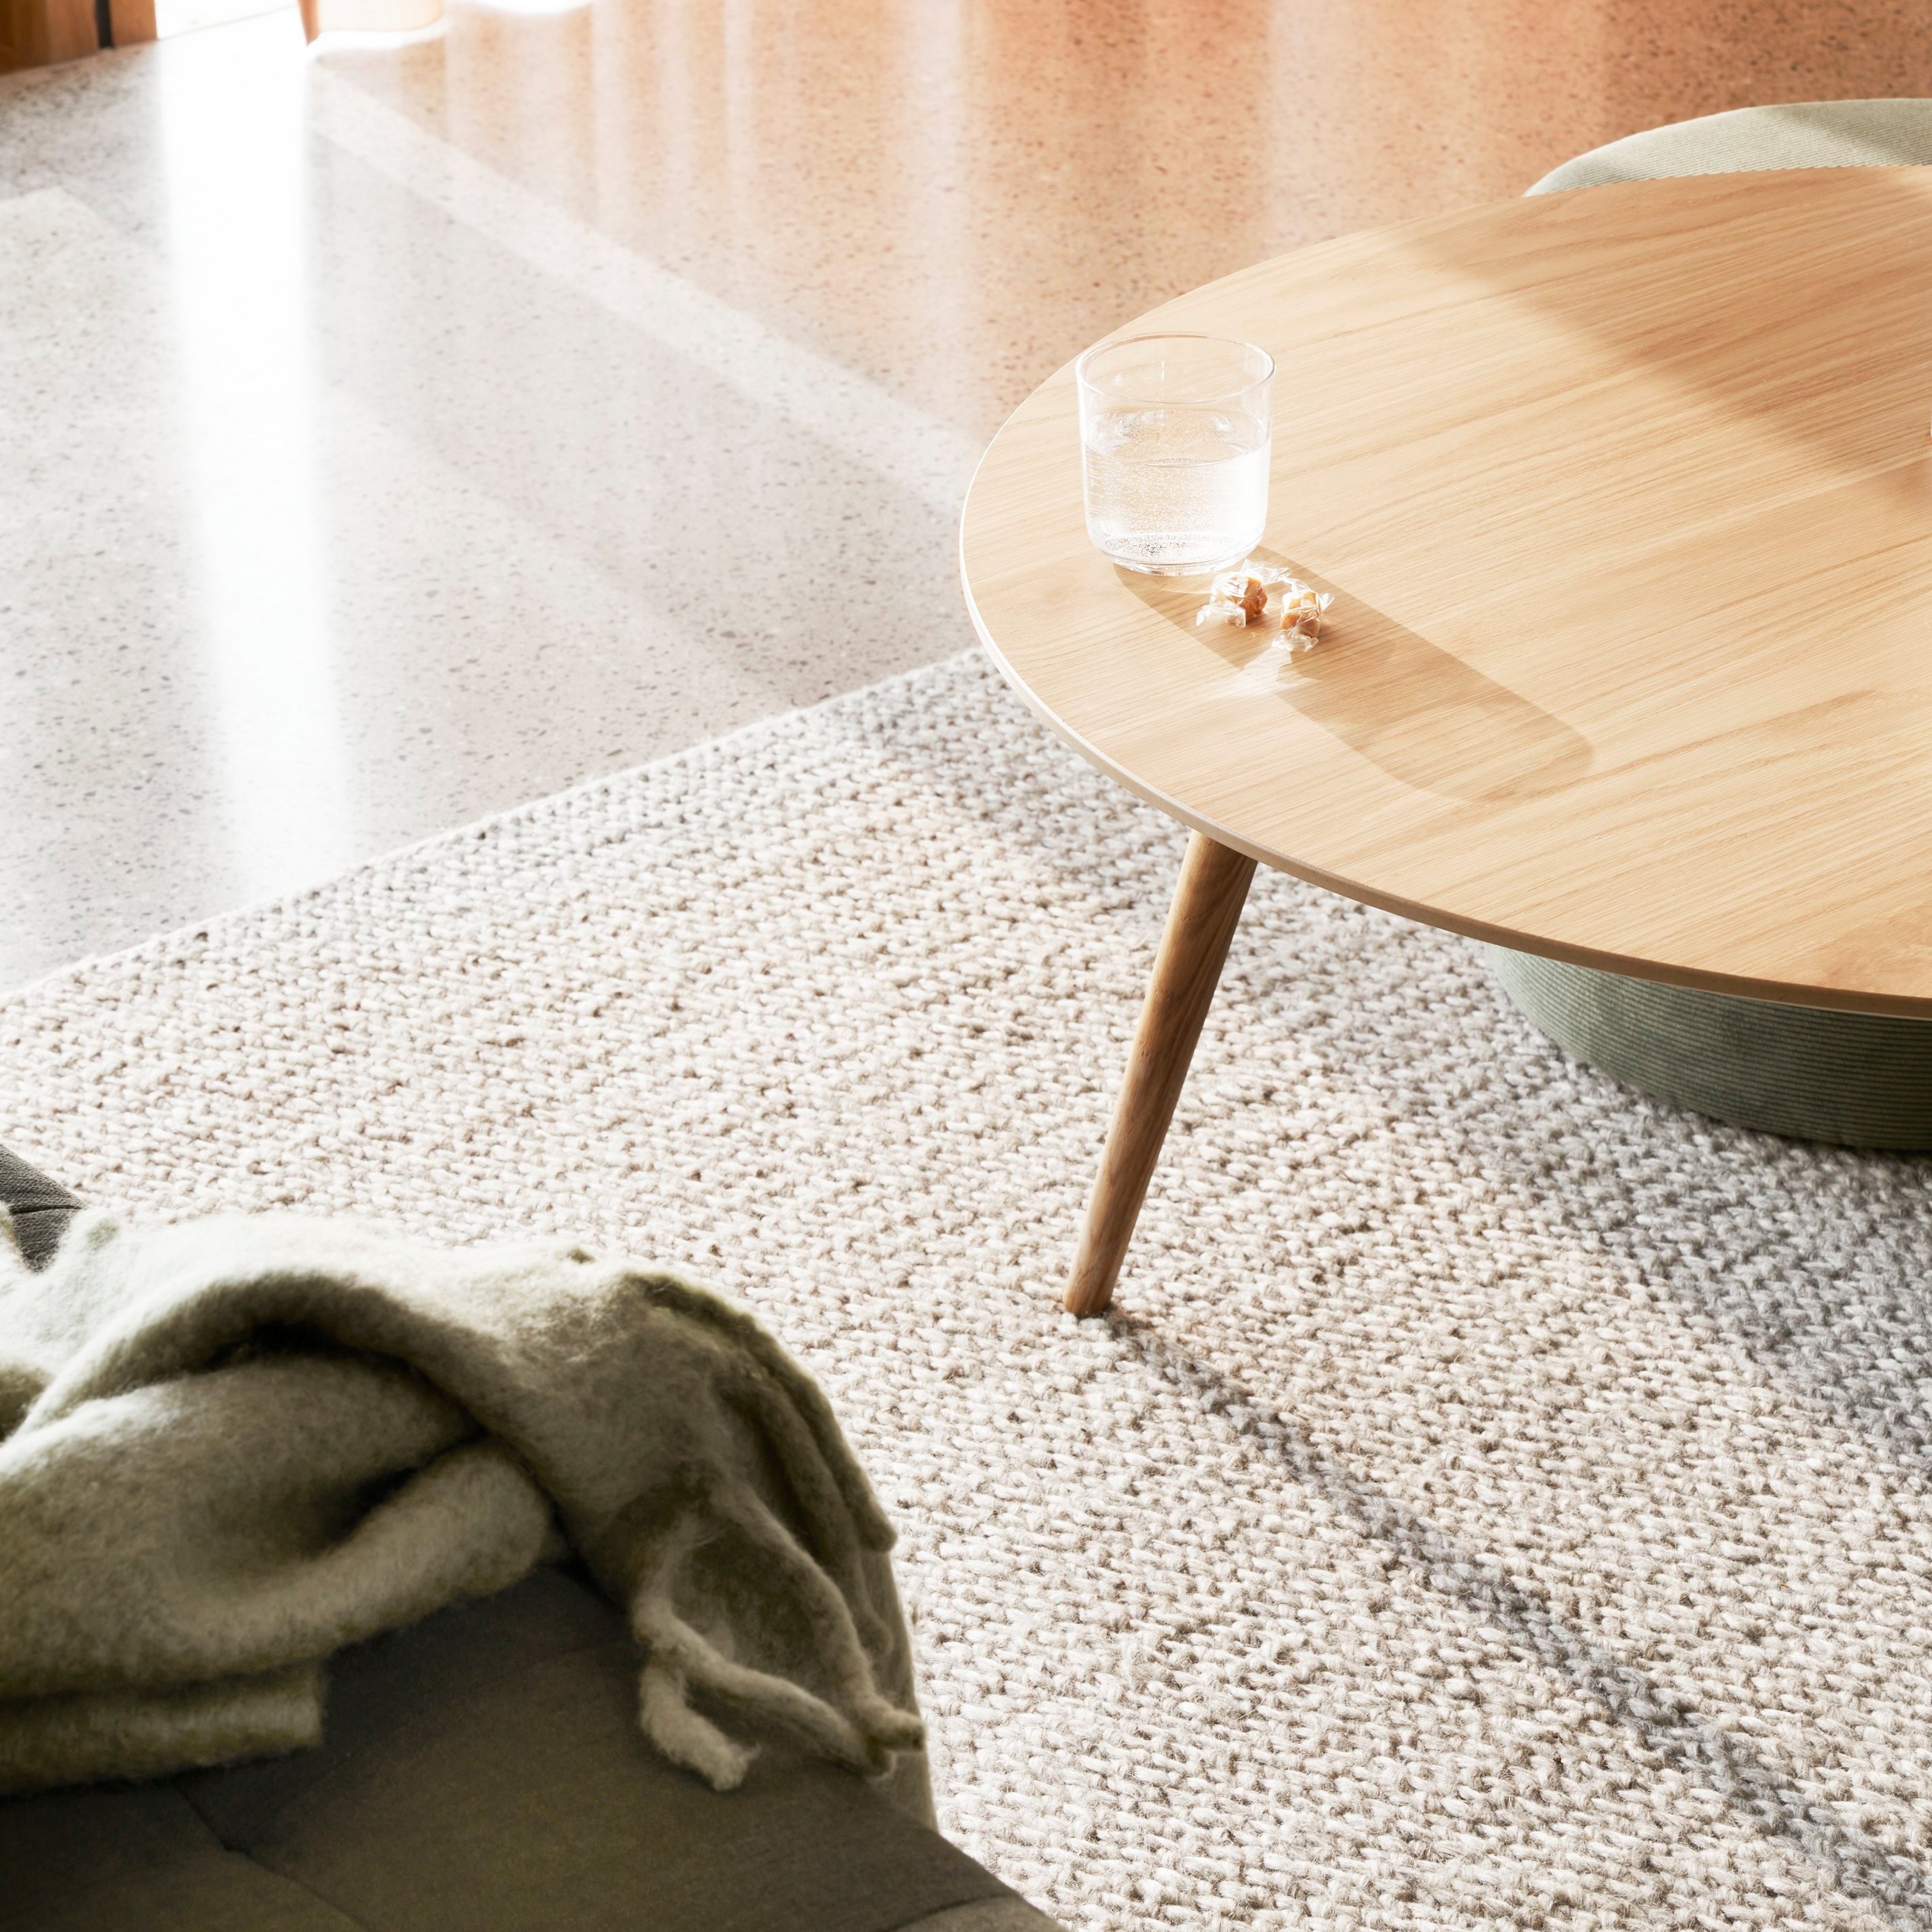 Textúrovaný koberec s okrúhlym dreveným stolom, pohárom vody a mäkkou dekou na slnečnom svetle.